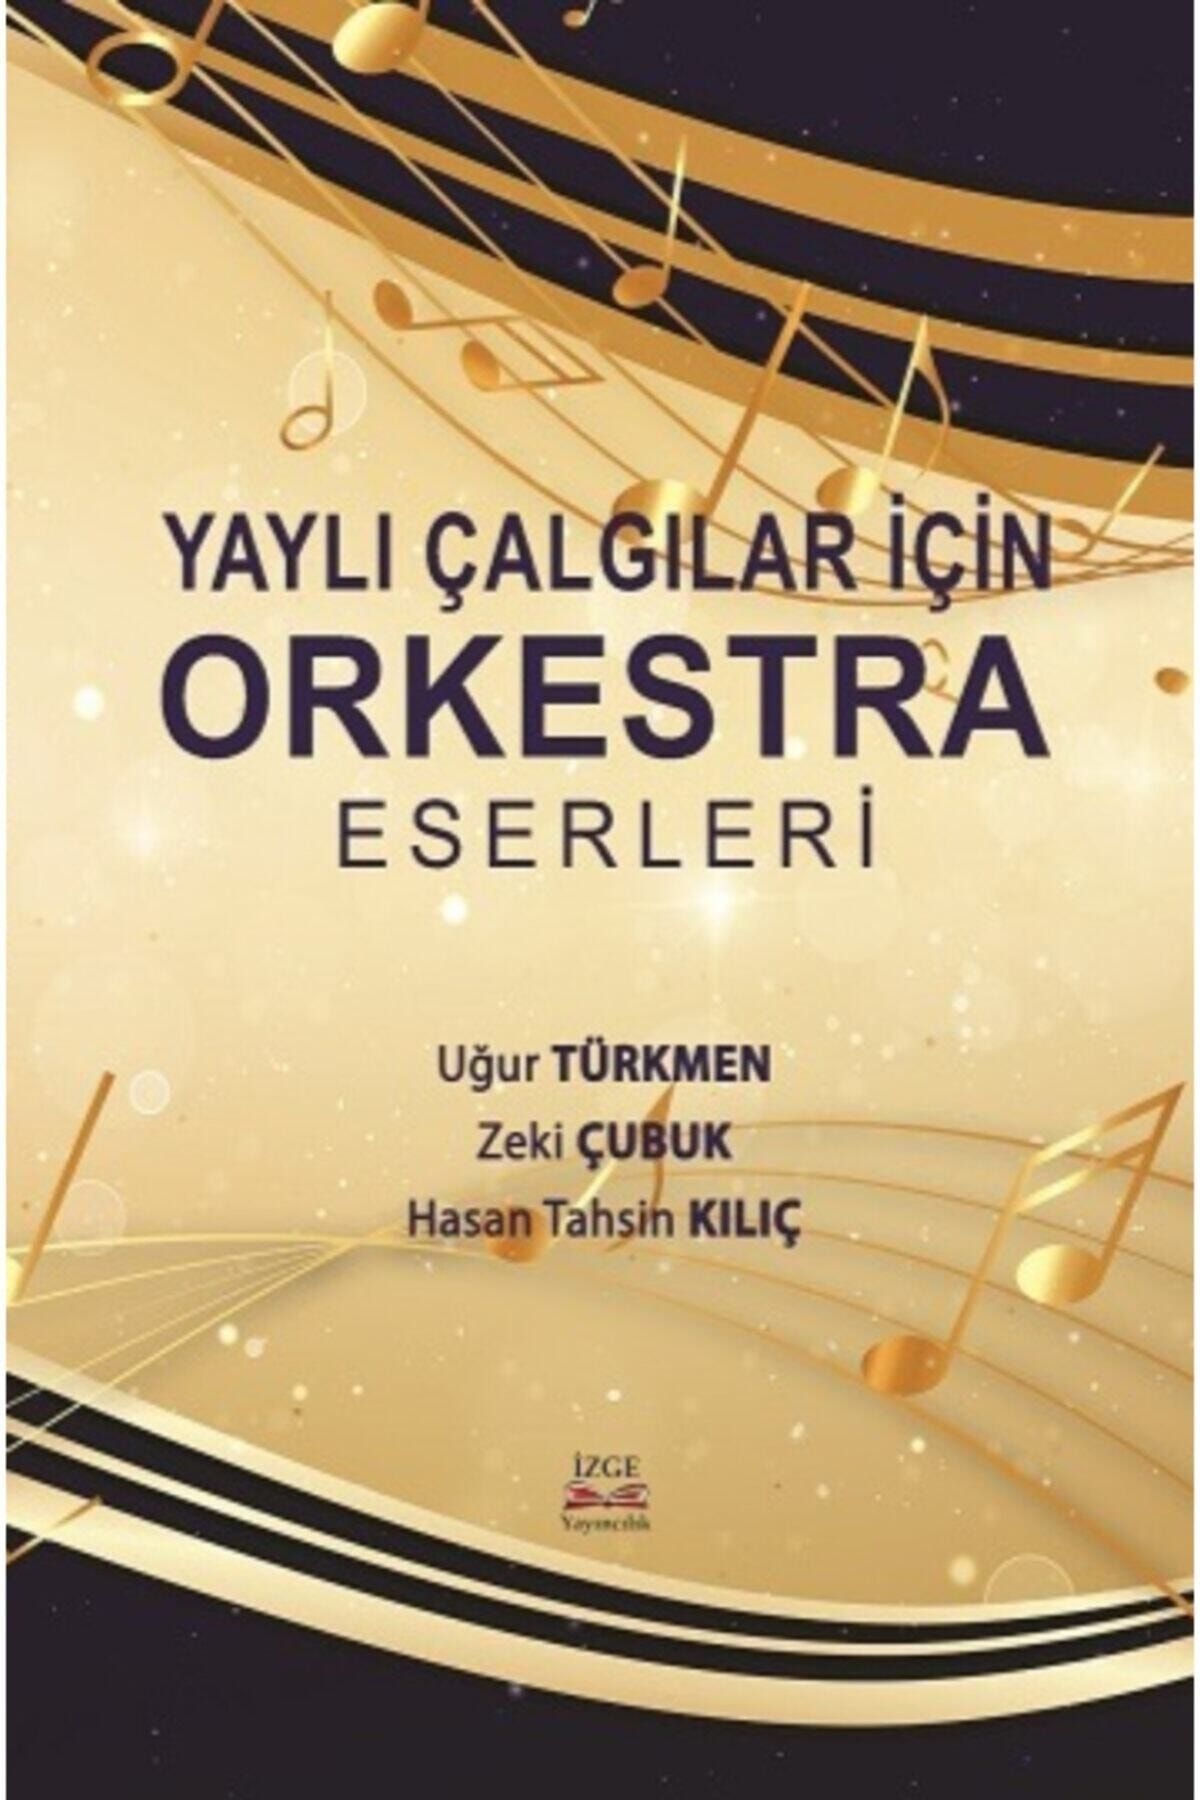 İzge Yayıncılık Yaylı Çalgılar Için Orkestra Eserleri - Uğur Türkmen , Zeki Çubuk , Hasan Tahsin Kılıç